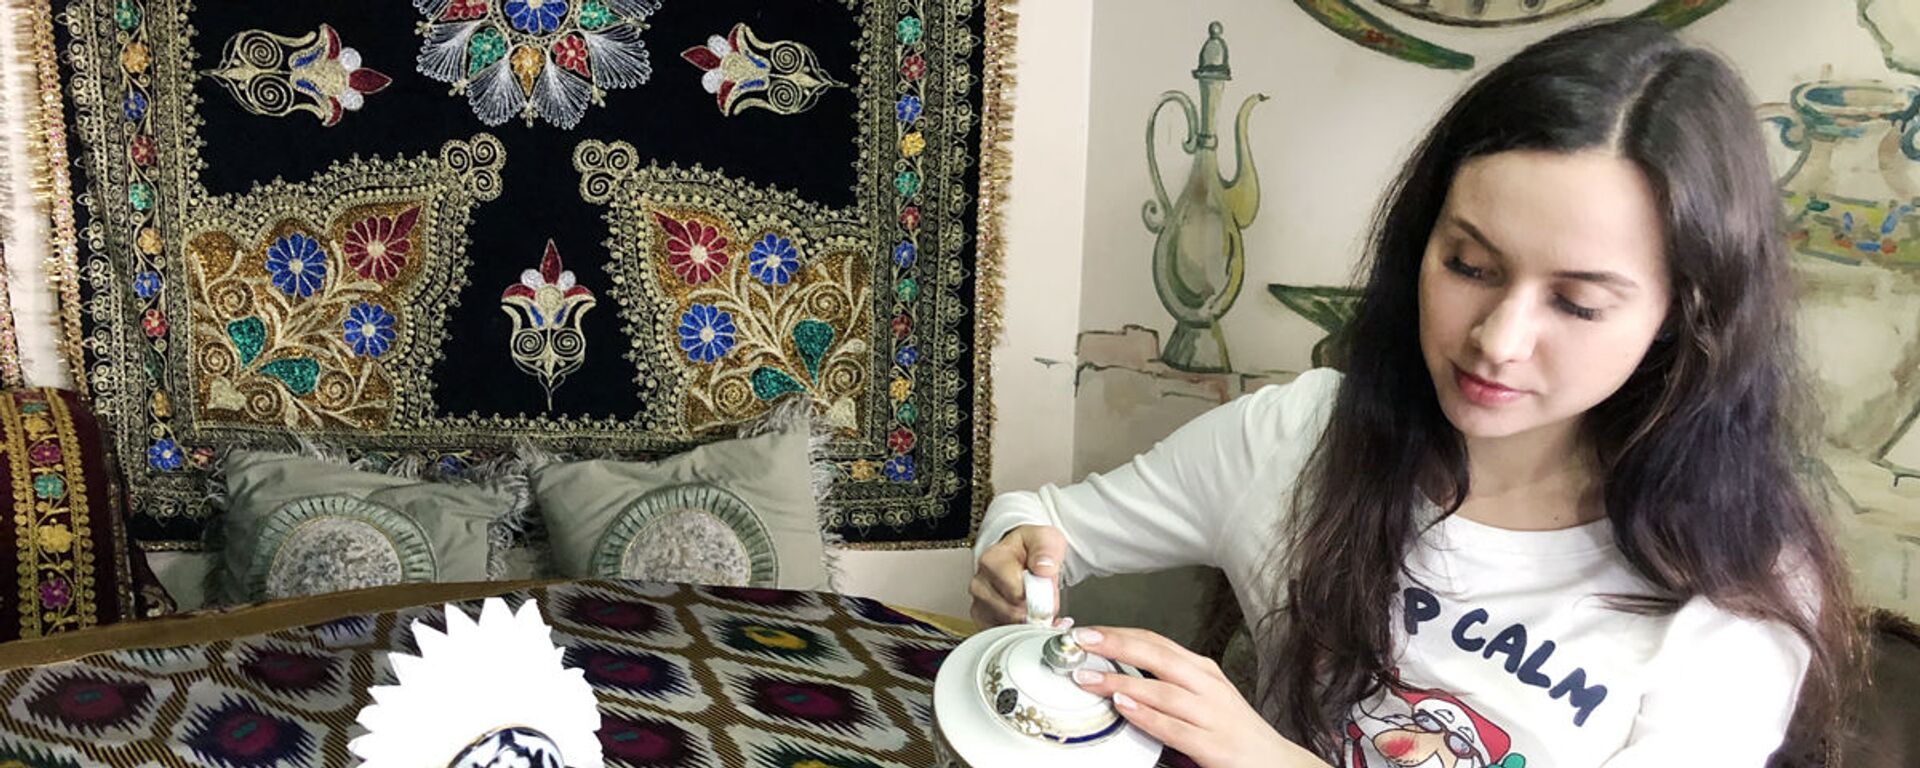 Найти кафе в Узбекистане, где заваривают листовой чай – большая удача - Sputnik Ўзбекистон, 1920, 01.04.2021